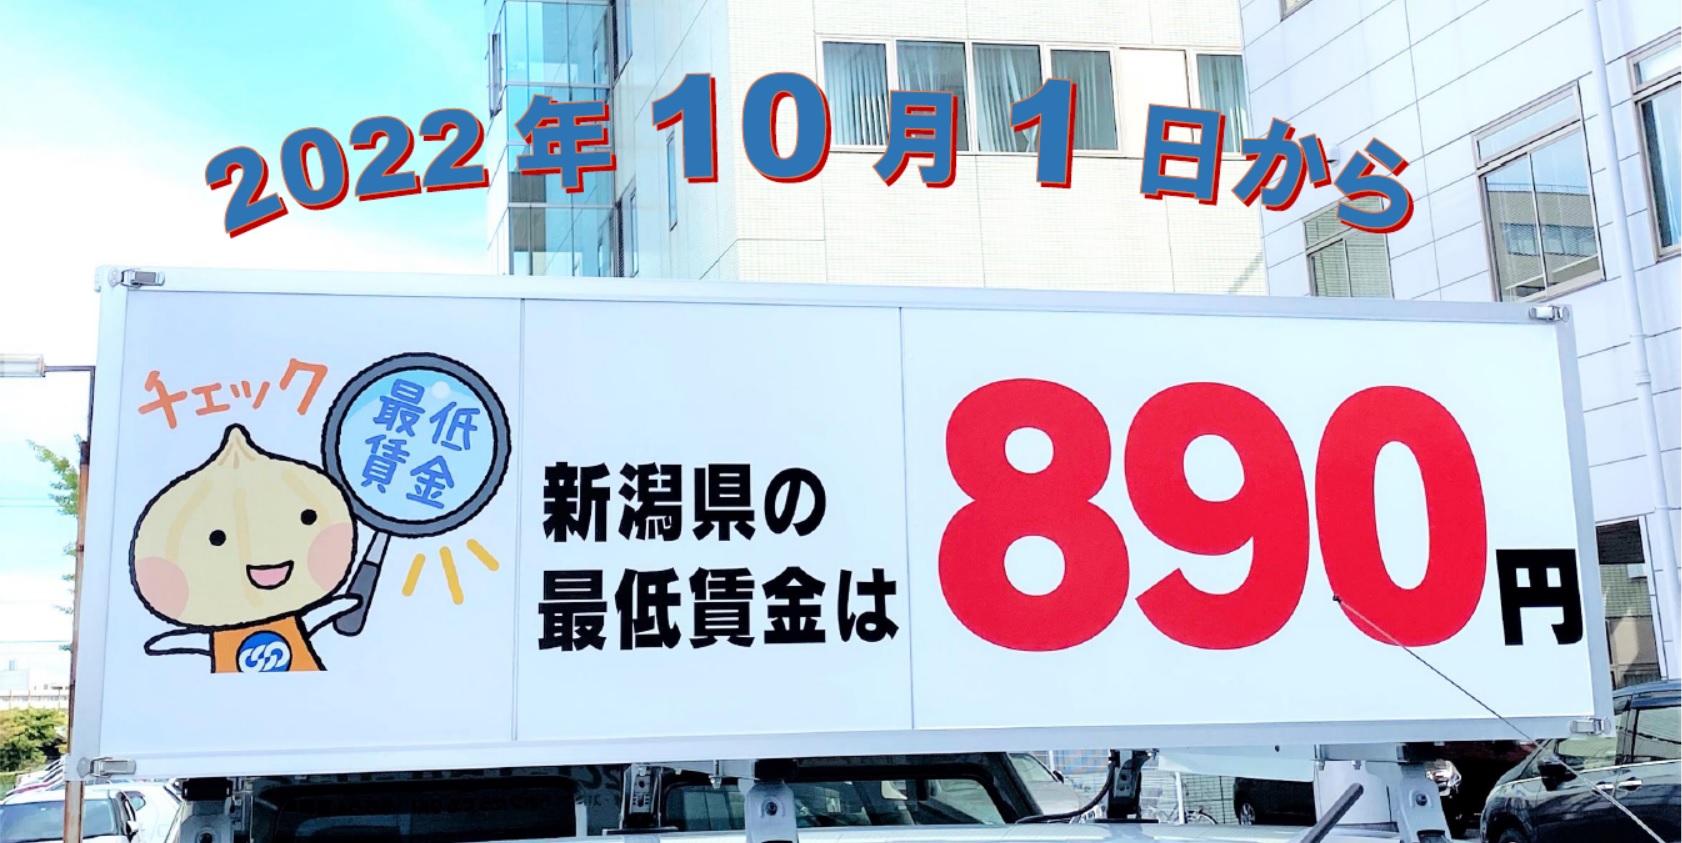 2022年10月1日から新潟県最低賃金は890円に